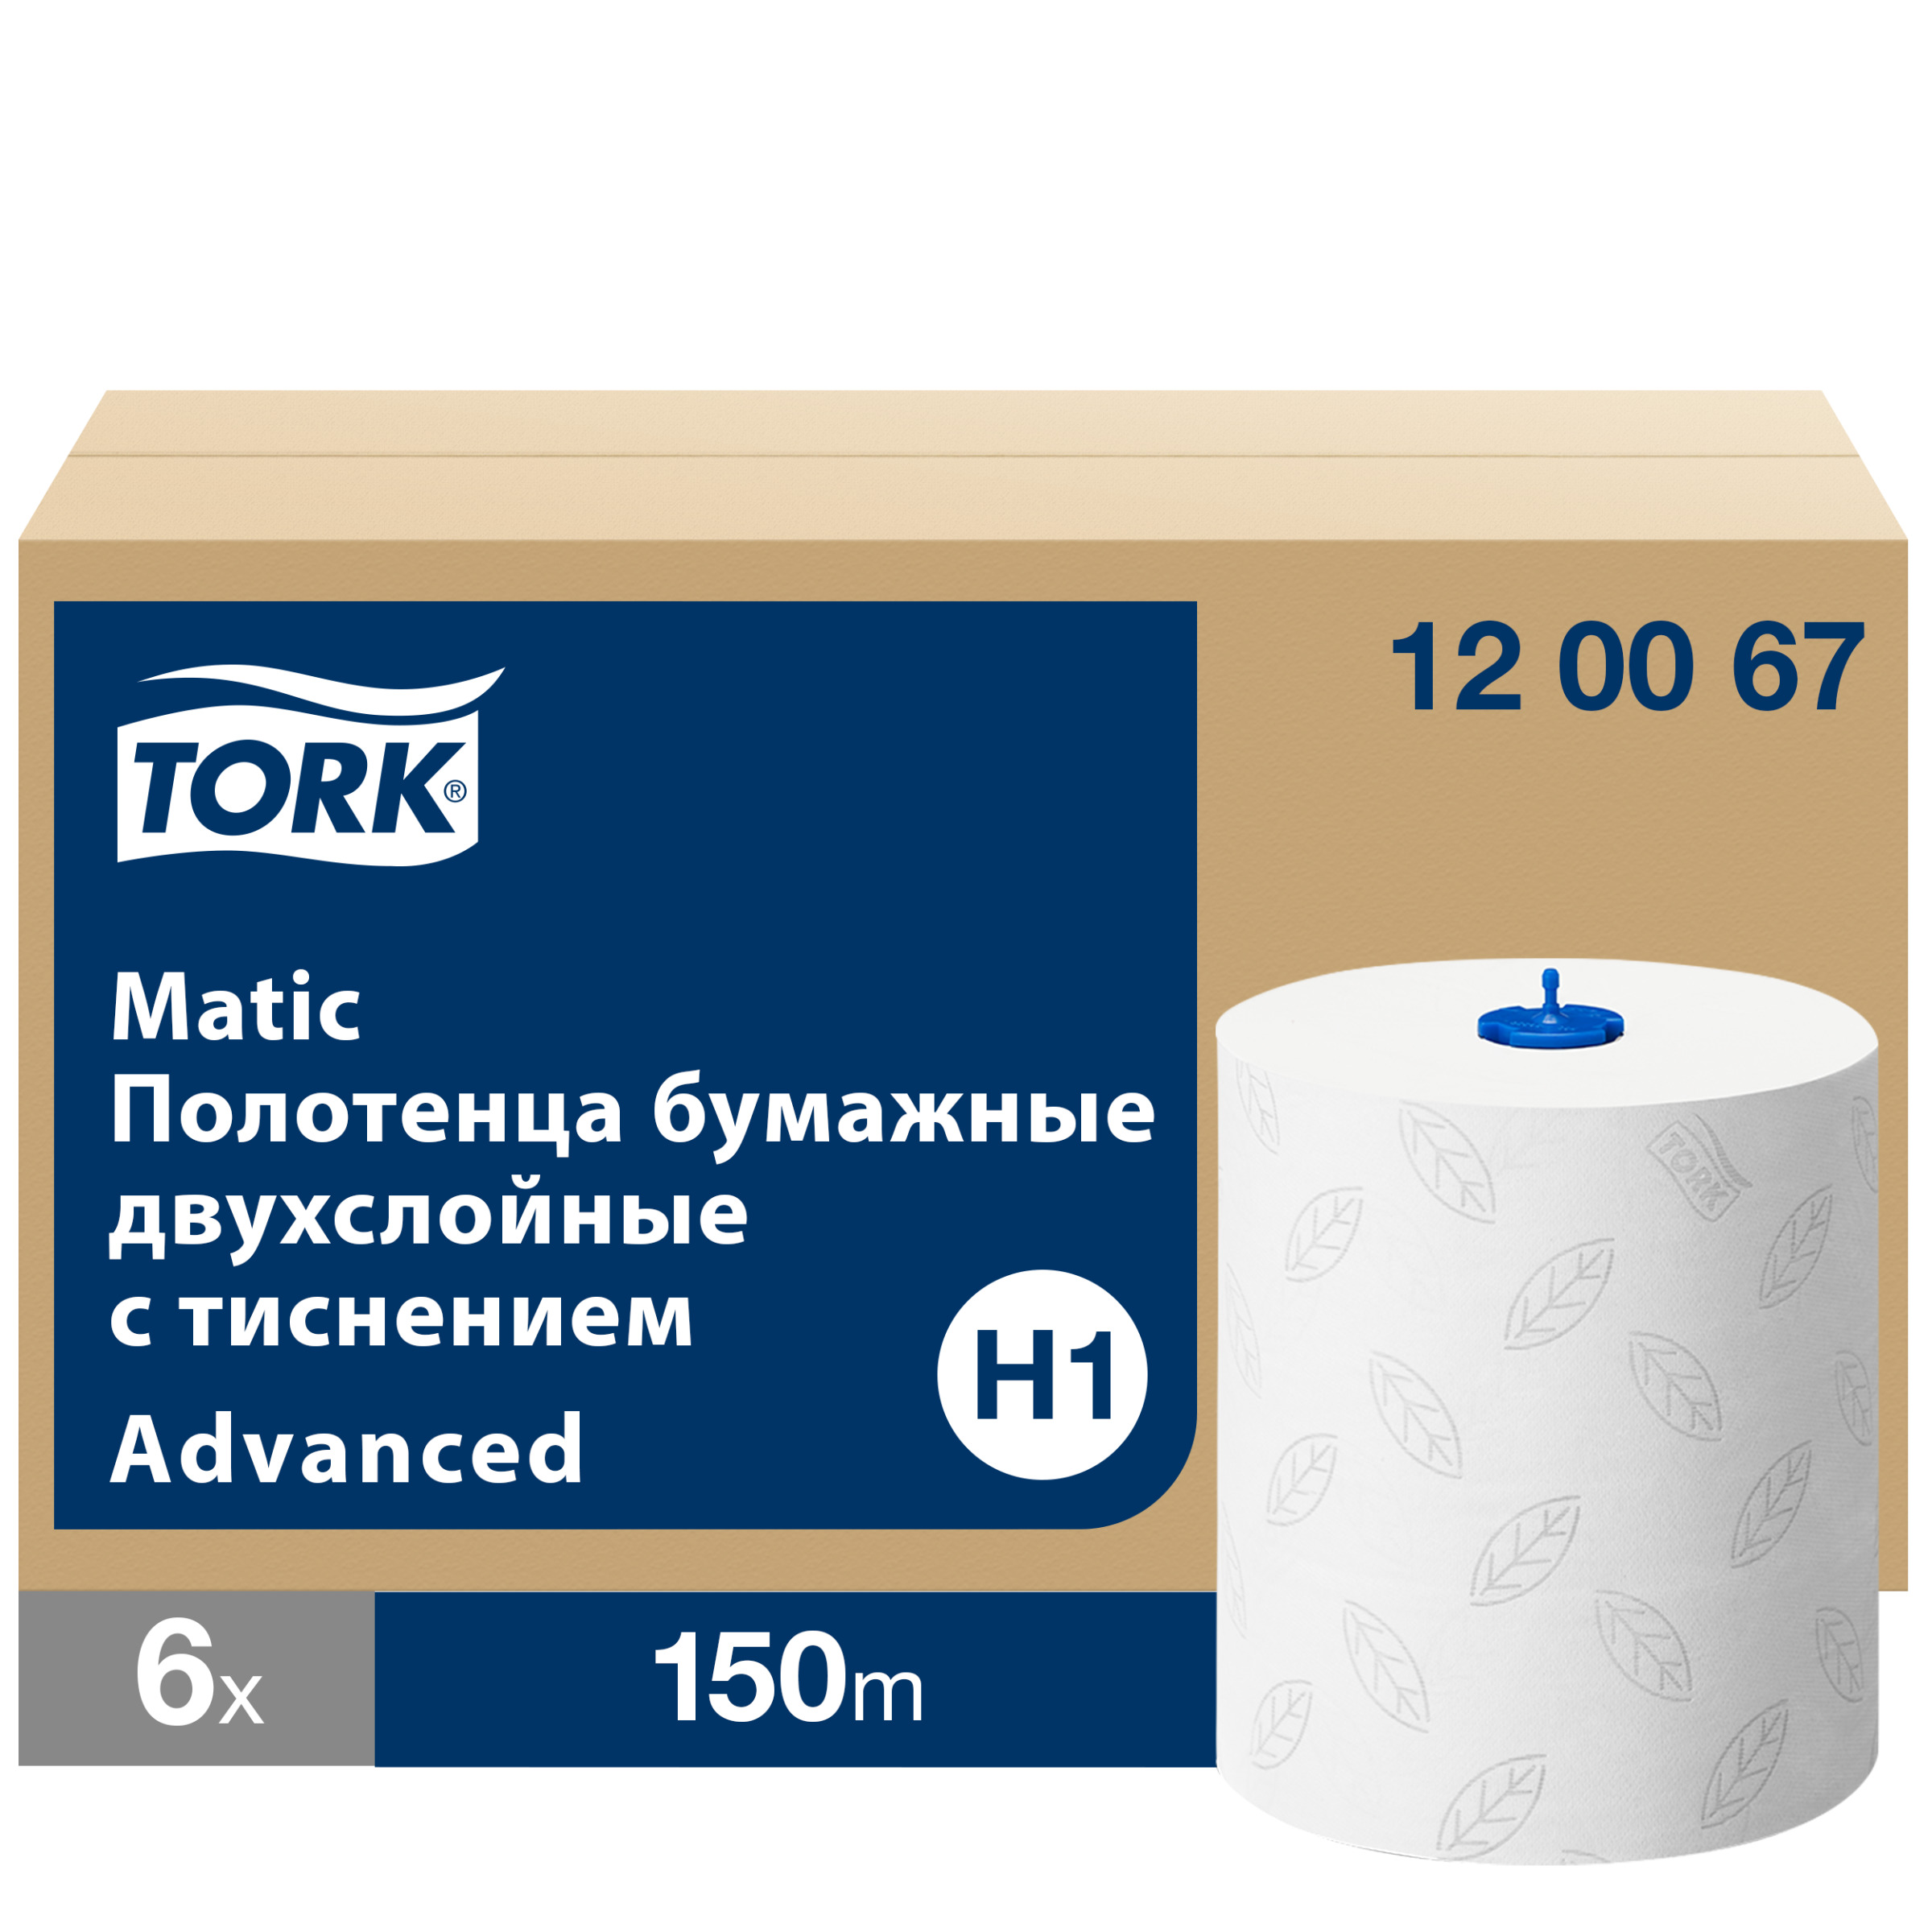 Полотенце tork advanced. 120067 Tork matic Advanced. Полотенца бумажные Tork matic Advanced 120067. Полотенца бумажные Tork h1. 120067 Tork matic полотенца в рулонах.